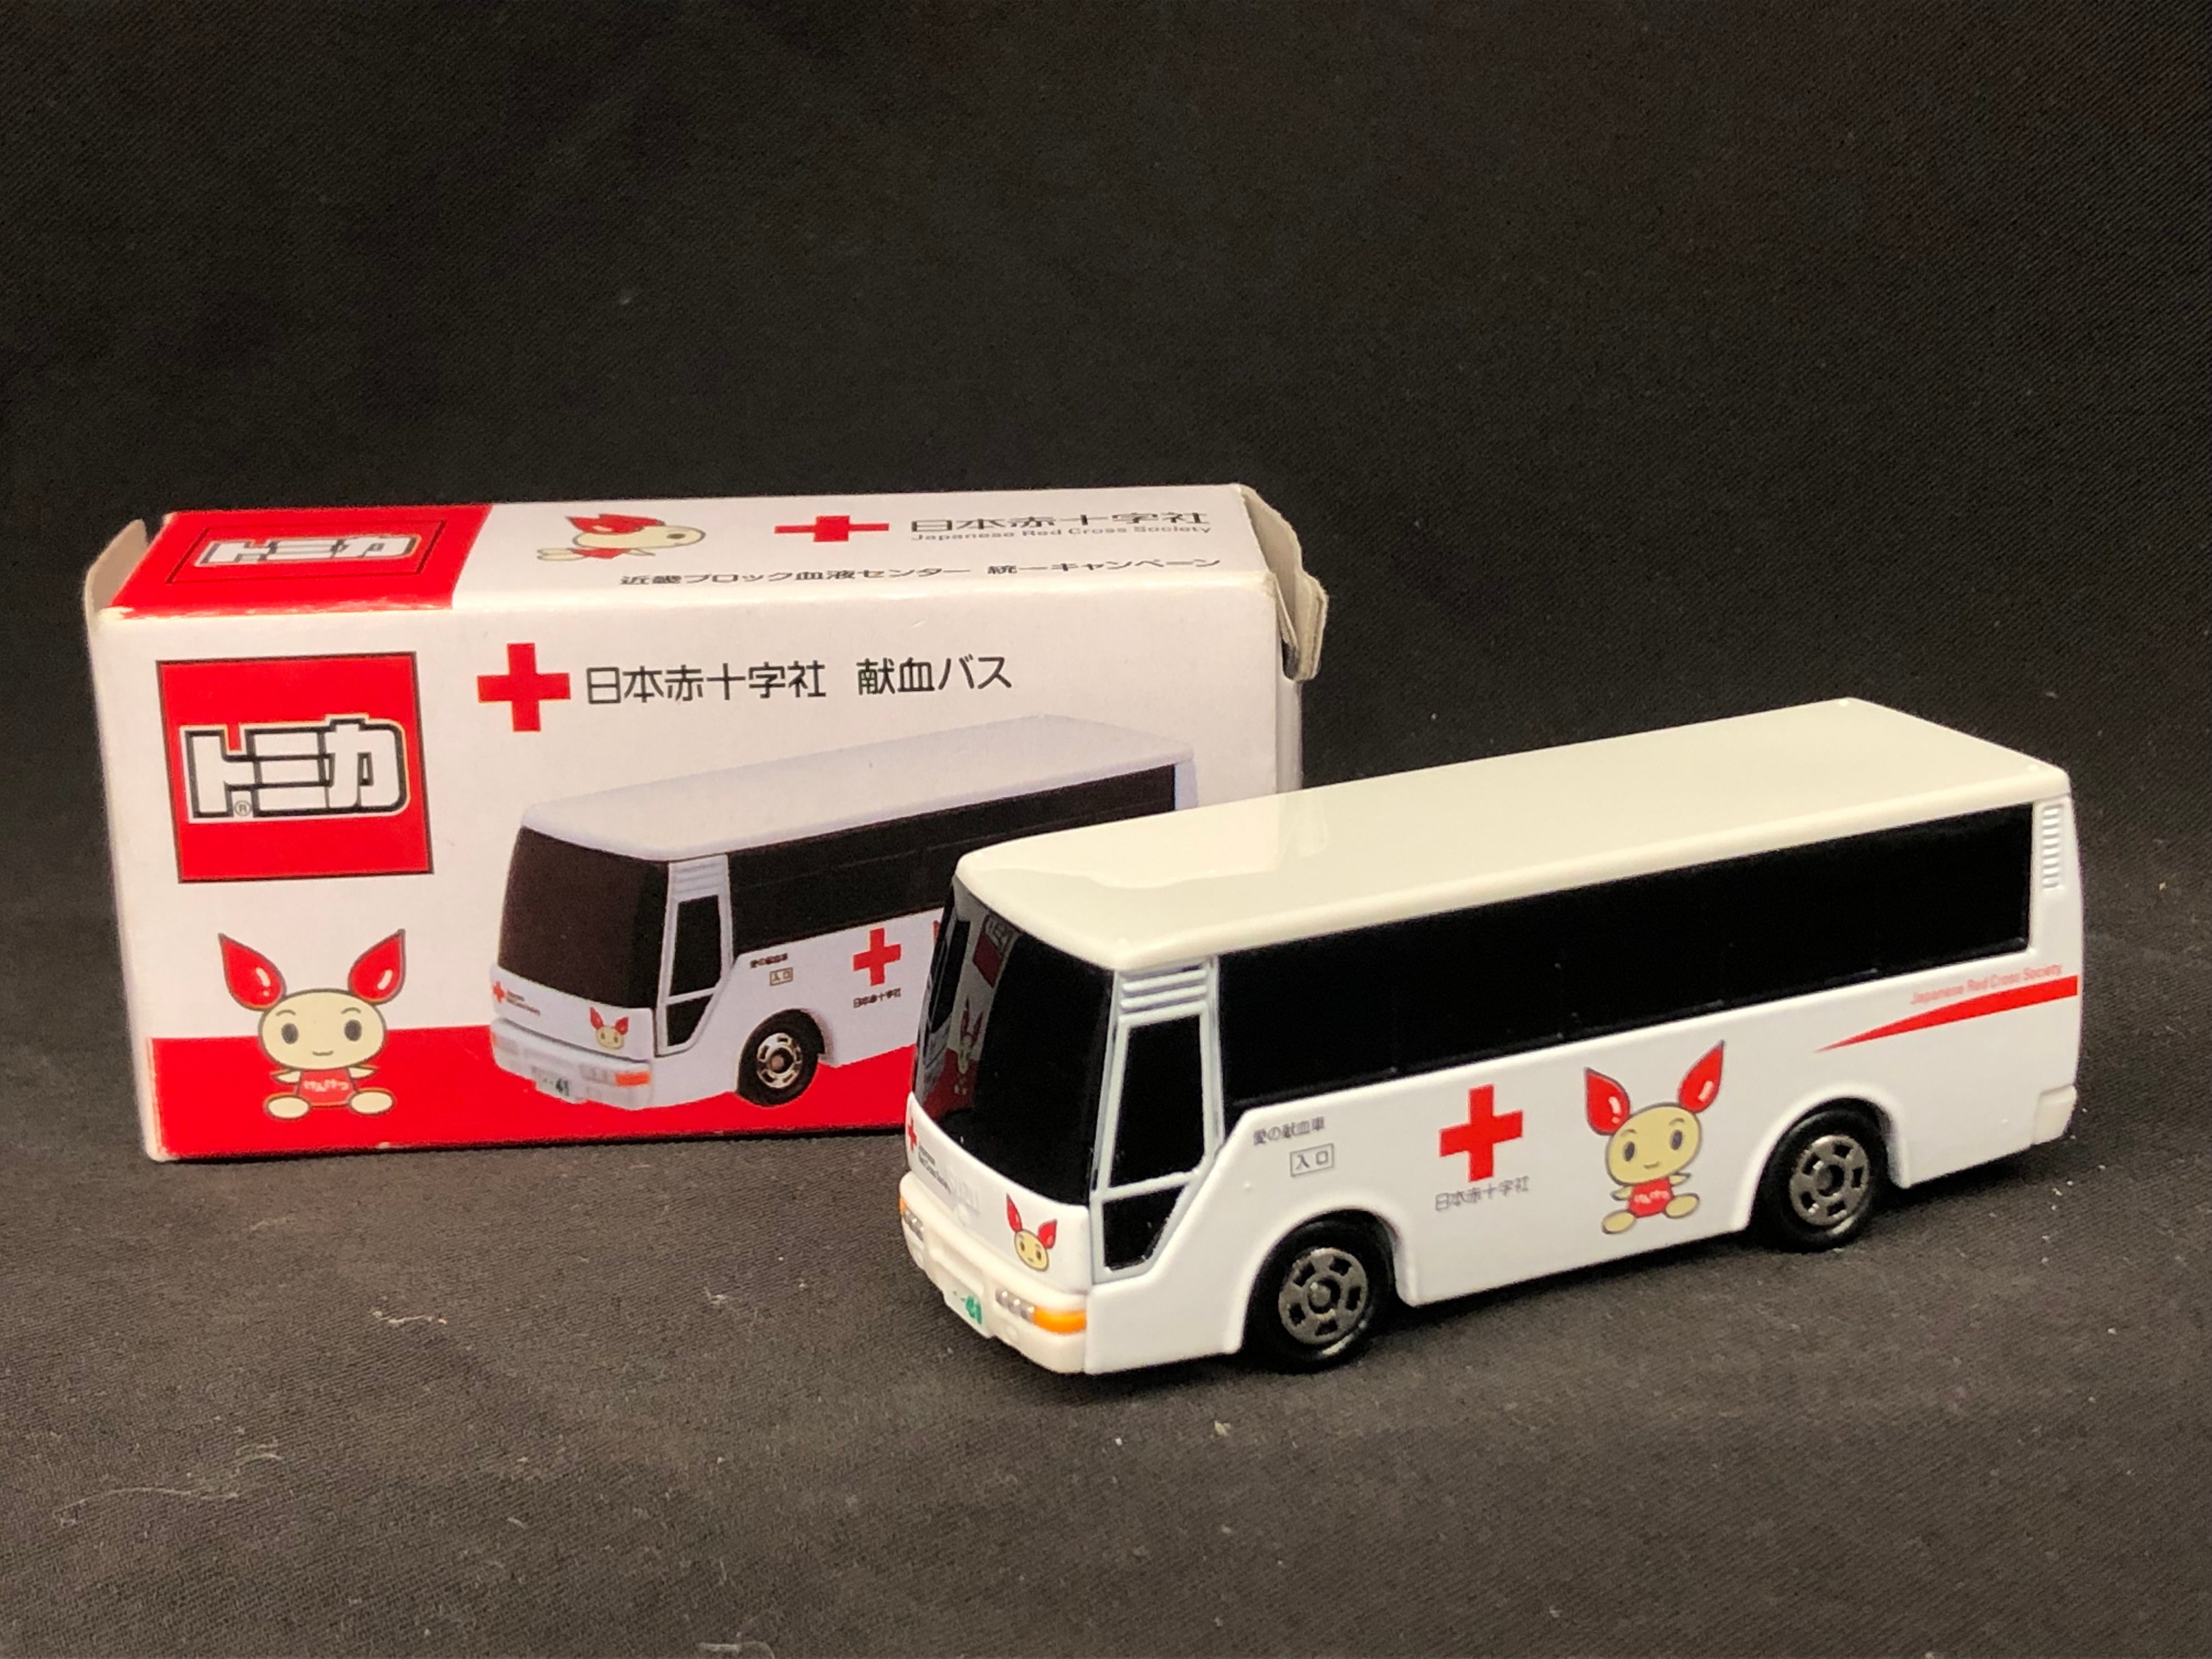 トミカ黒箱 8いすず バス(日本赤十字社献血バス)日本製 - ミニカー